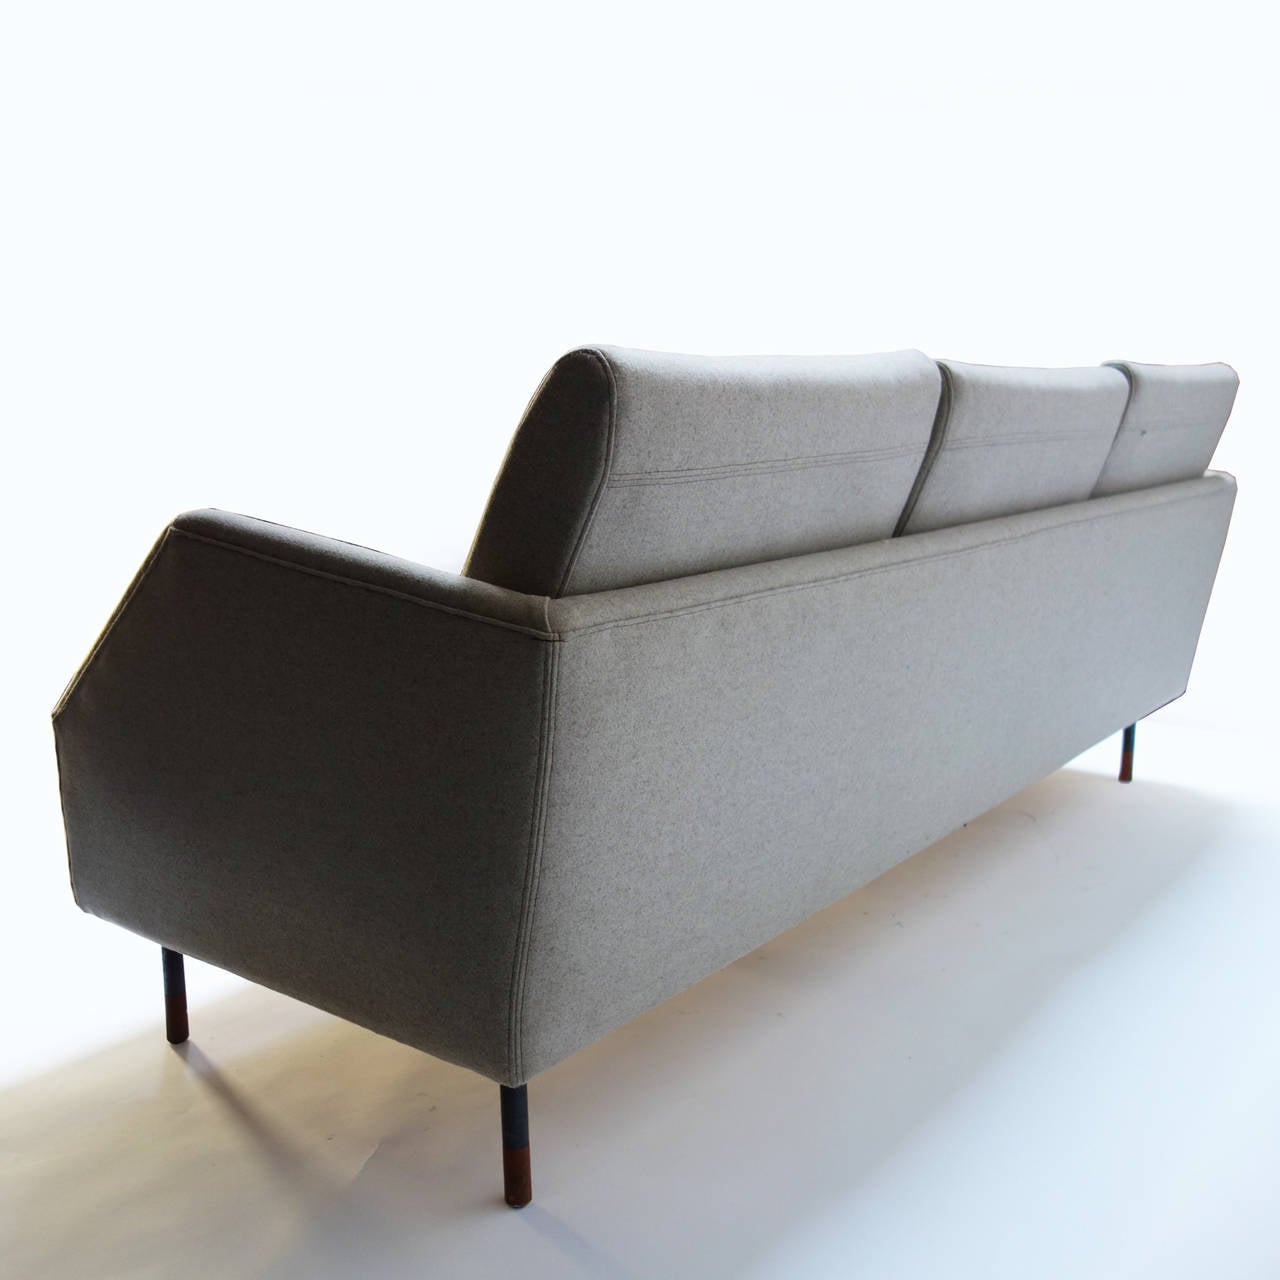 Steel Elegant Sofa Model by Finn Juhl